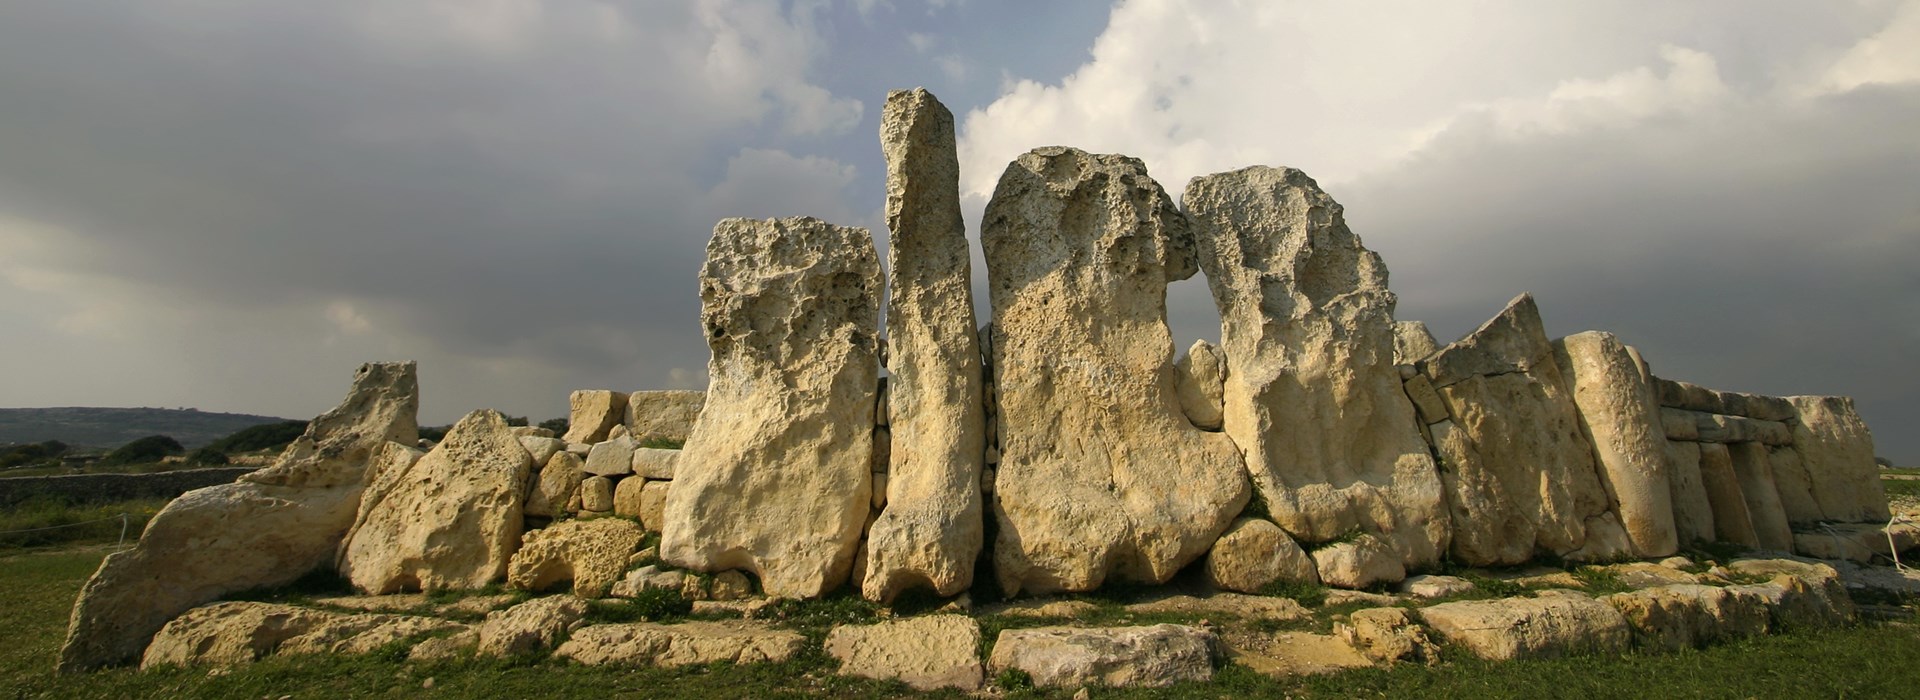 Visiter Les sites mégalithiques de Mnajdra et Hagar Qim - Malte